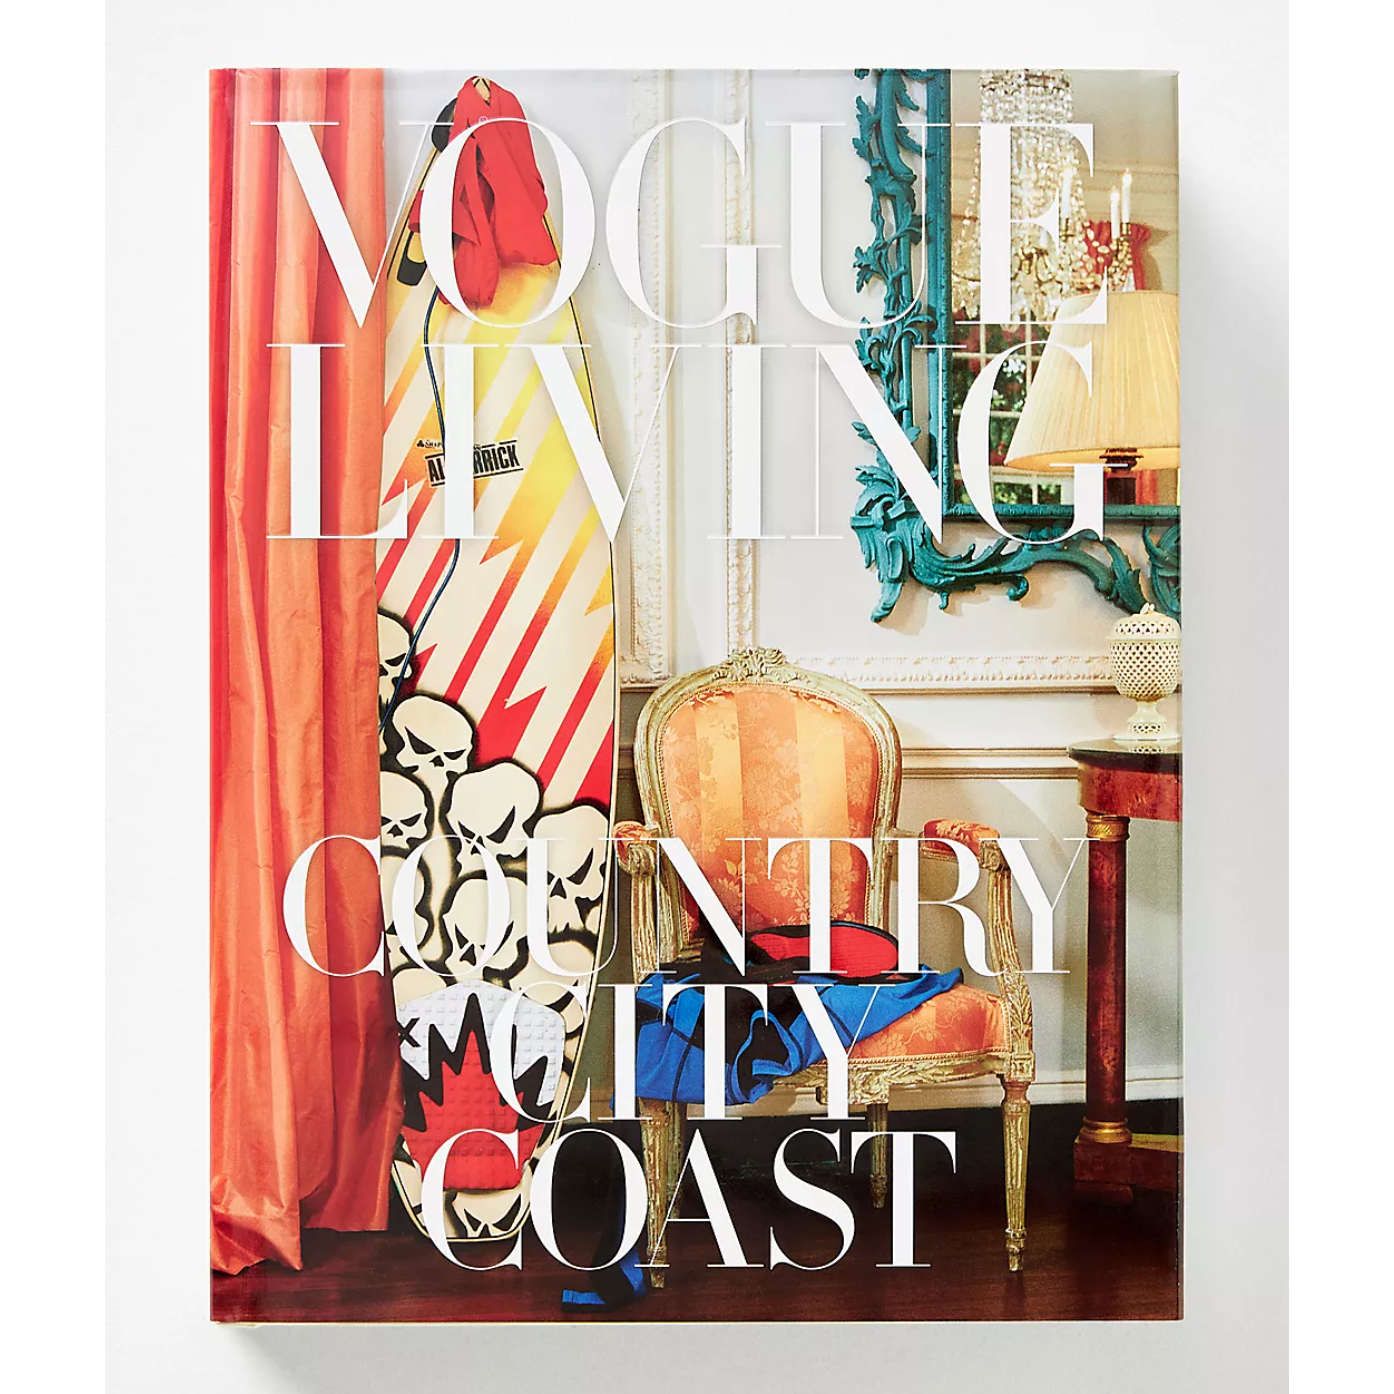 Vogue Living: Country, City, Coast Book